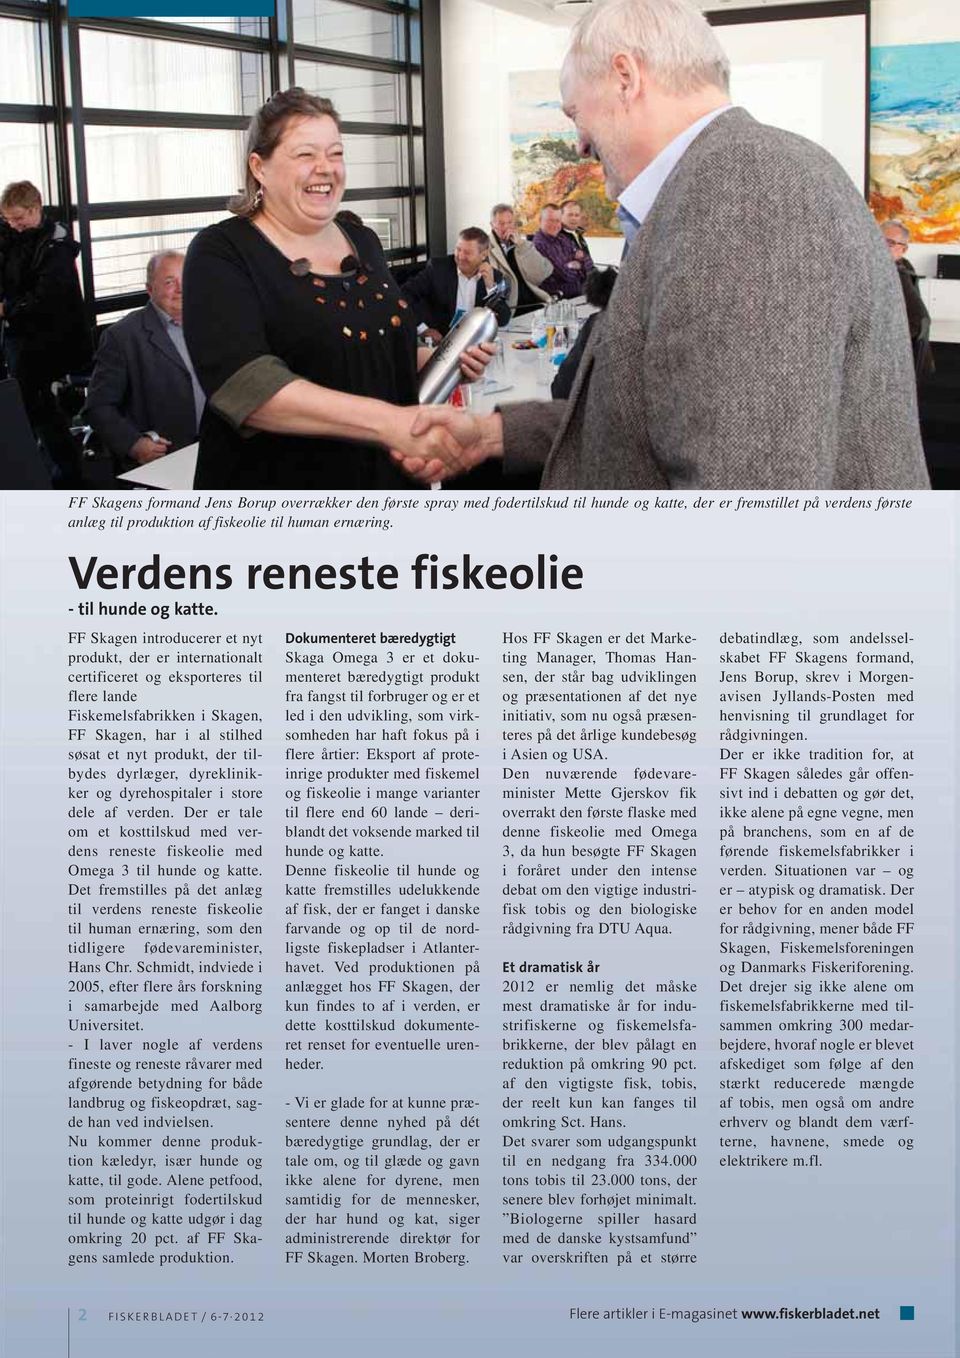 FF Skagen introducerer et nyt produkt, der er internationalt certificeret og eksporteres til flere lande Fiskemelsfabrikken i Skagen, FF Skagen, har i al stilhed søsat et nyt produkt, der tilbydes